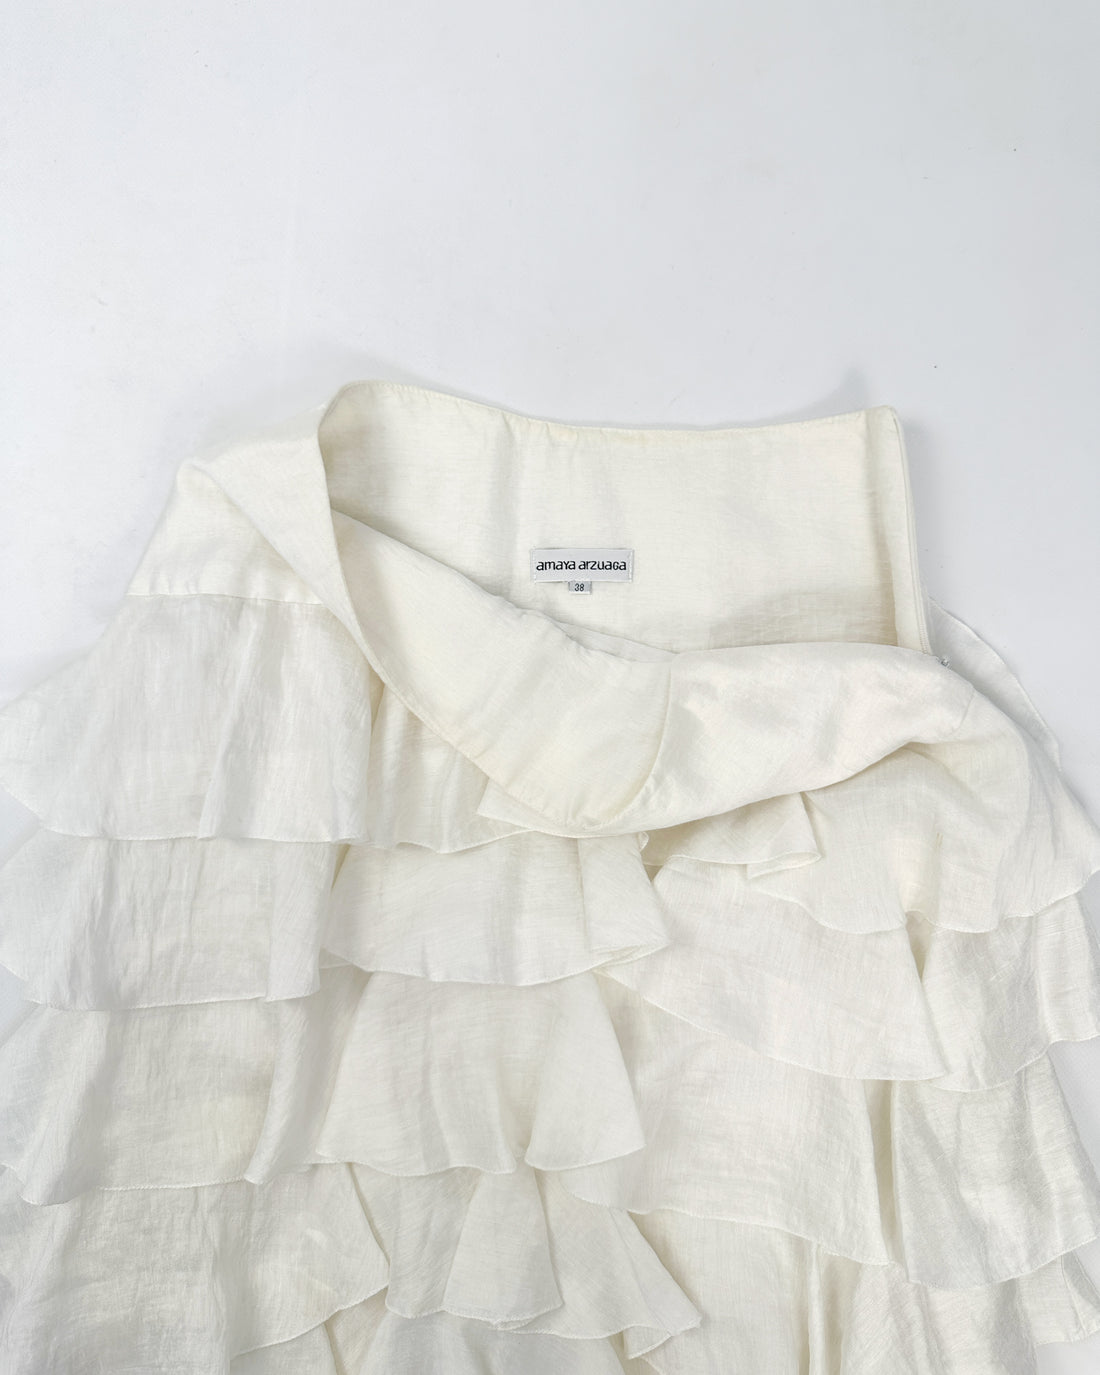 Amaya Arzuaga White Ruffled Skirt 2000's